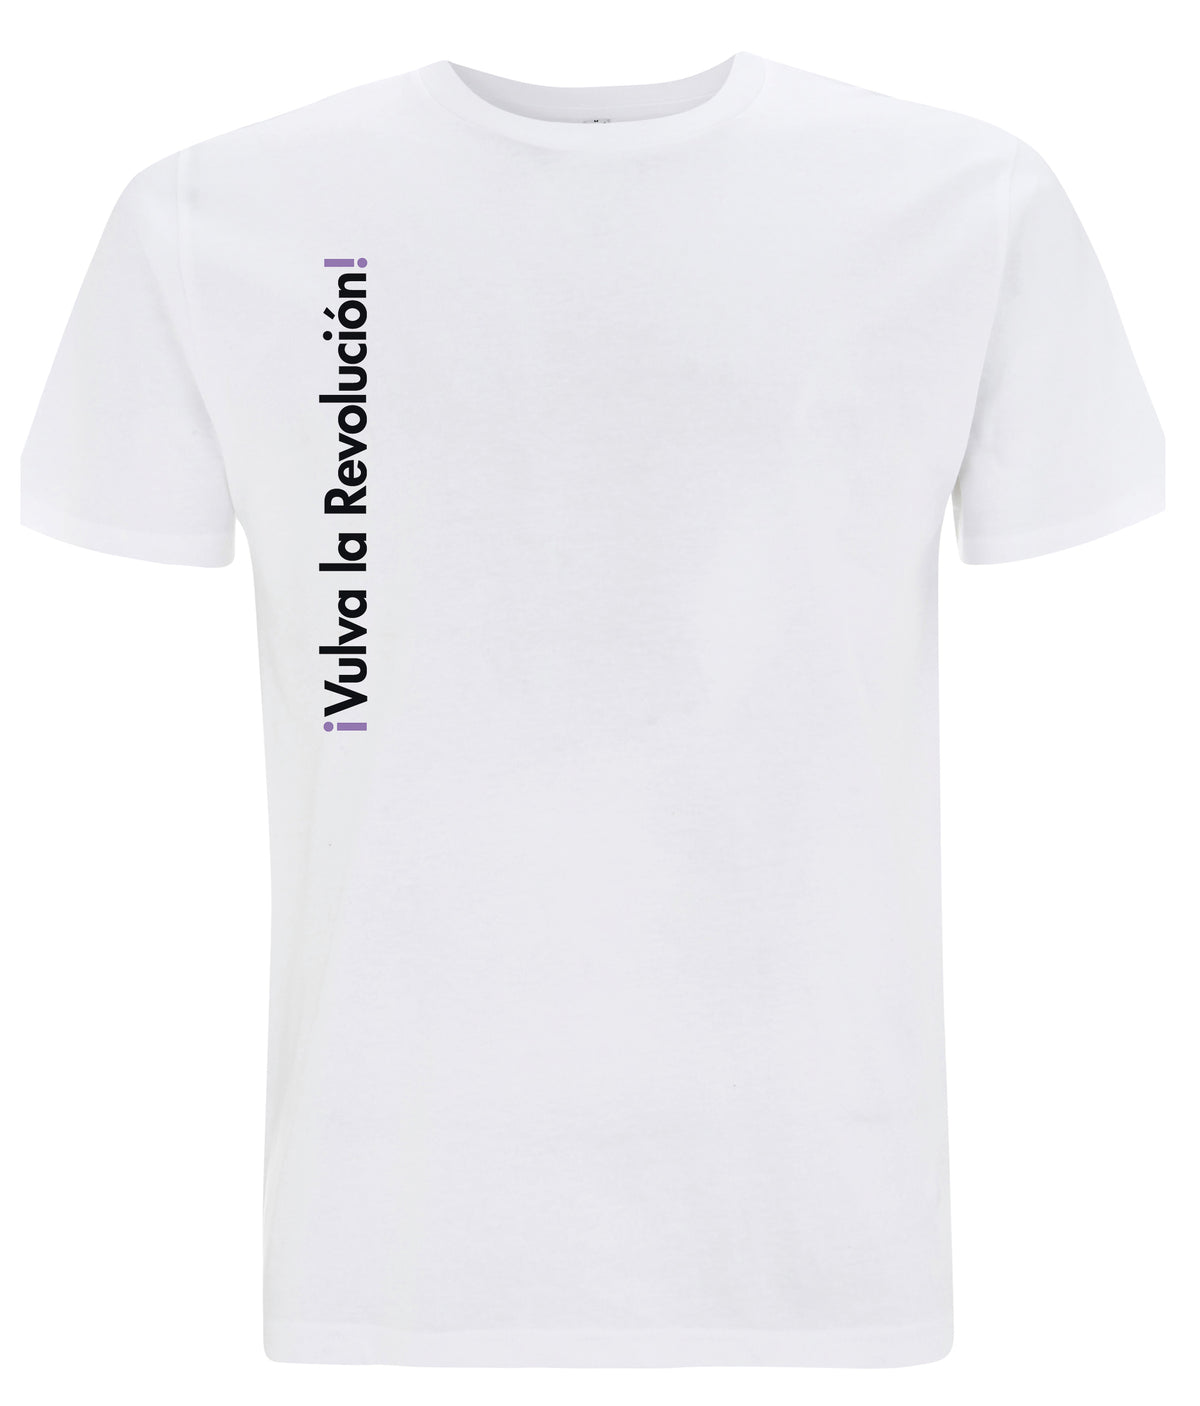 Vulva La Revolucion Organic Feminist T Shirt White